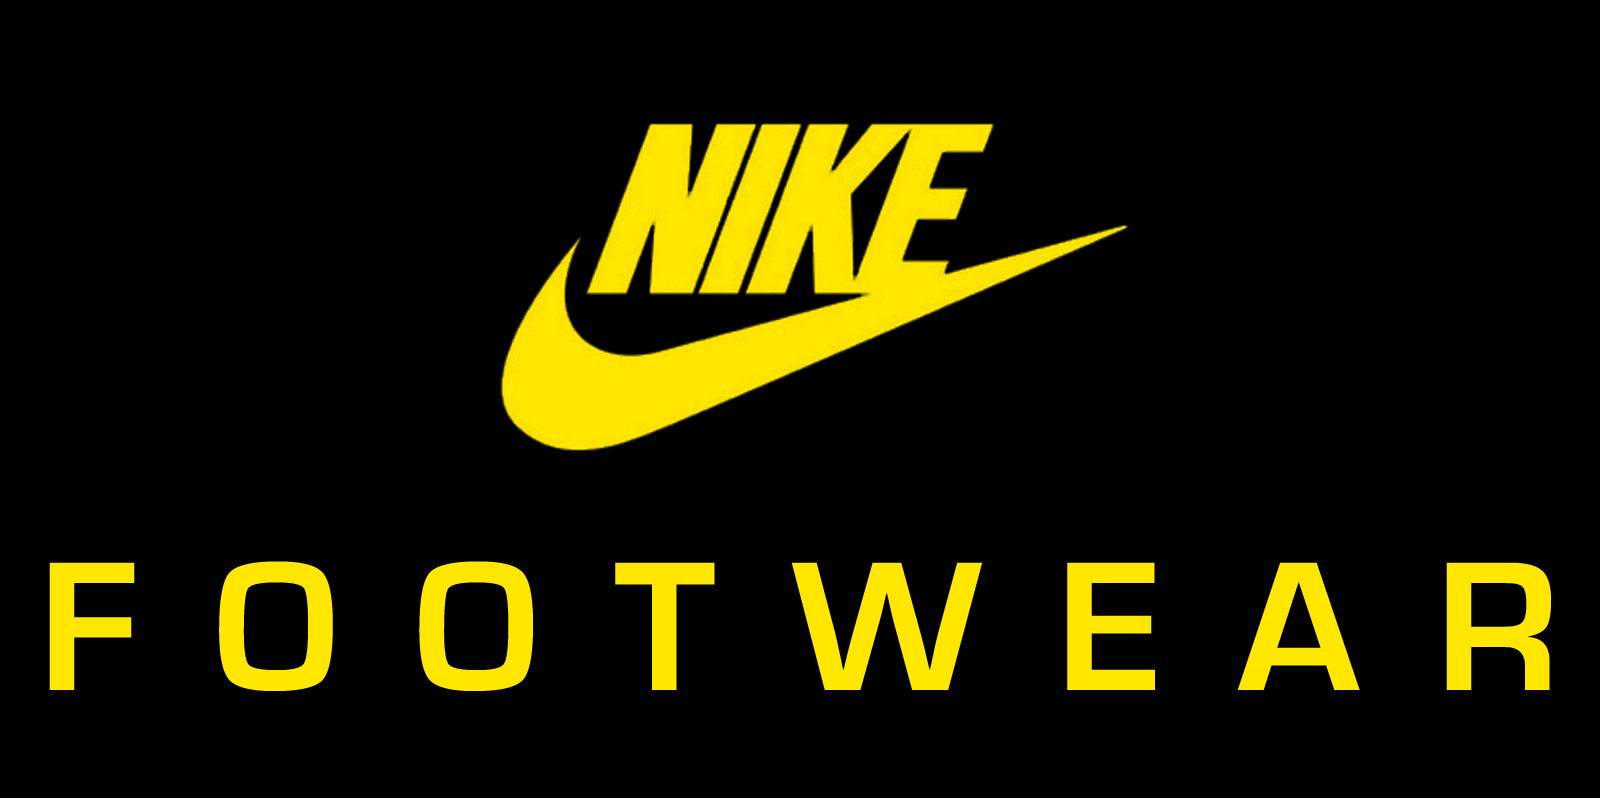 nike shoes logo images